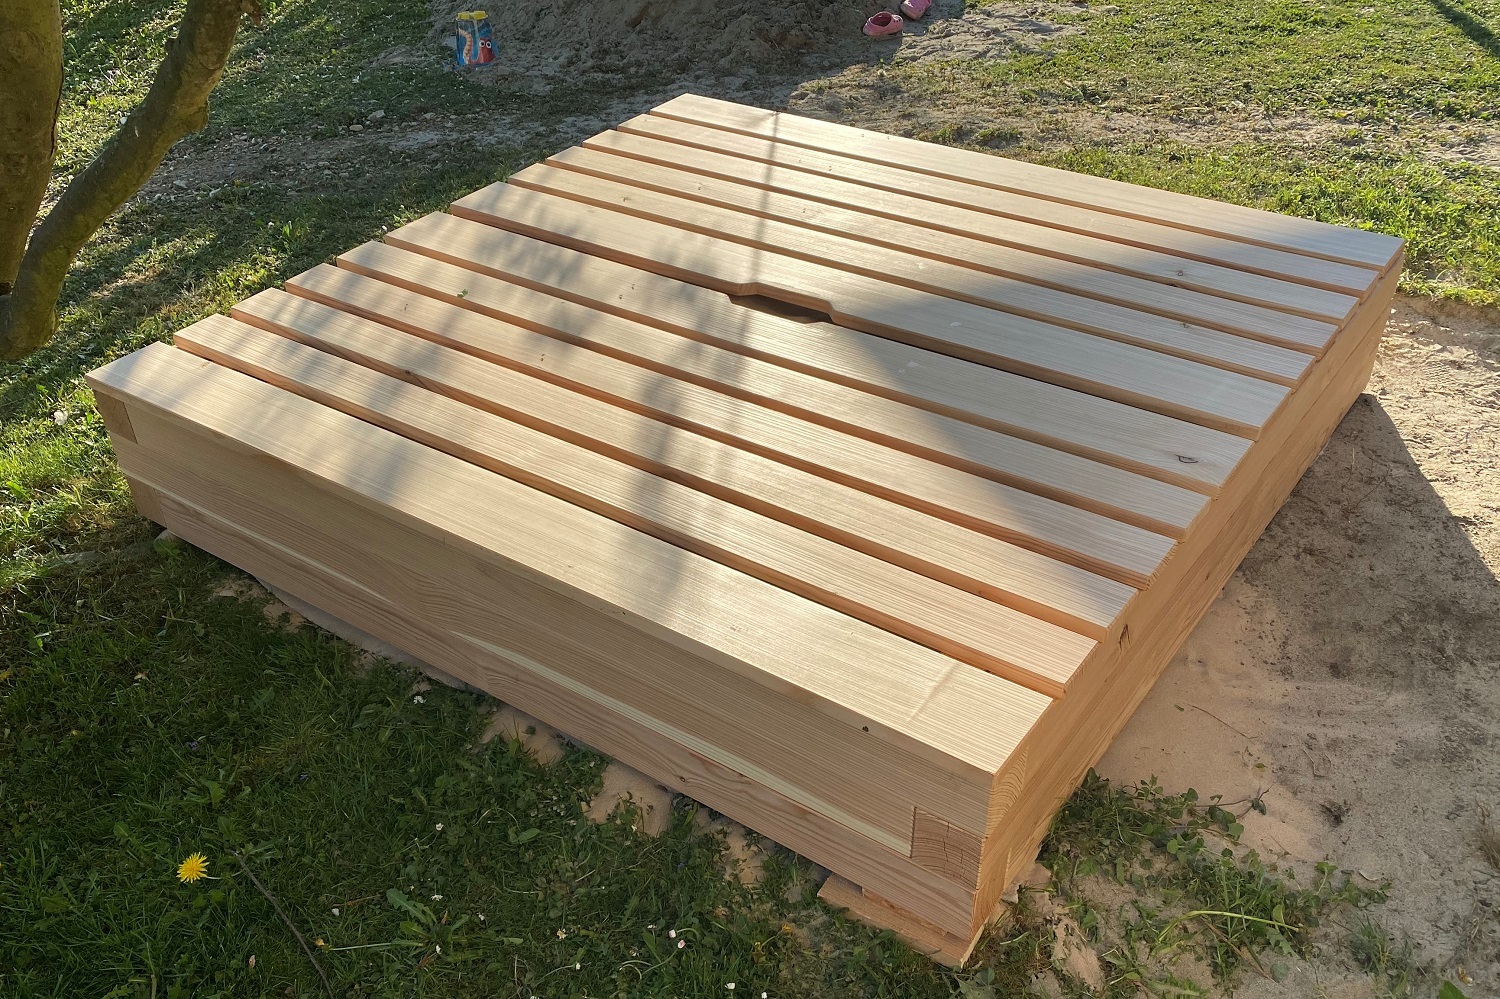 Sandkasten aus Schweizer Holz